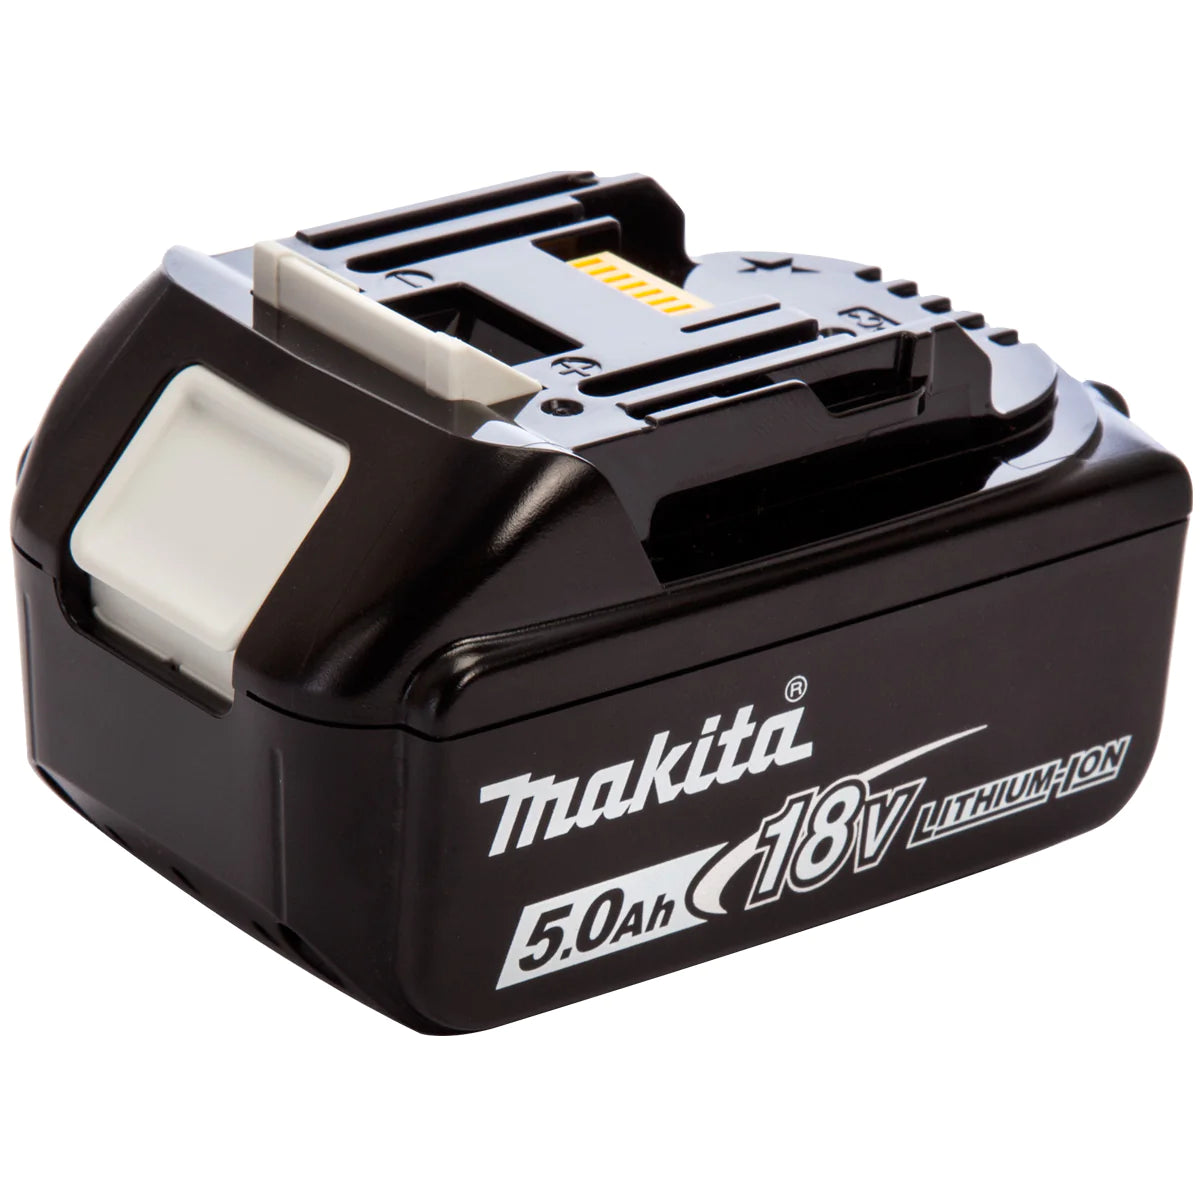 Makita 6 Piece Kit 18V Li-ion with 3 x 5.0Ah Batteries & Charger